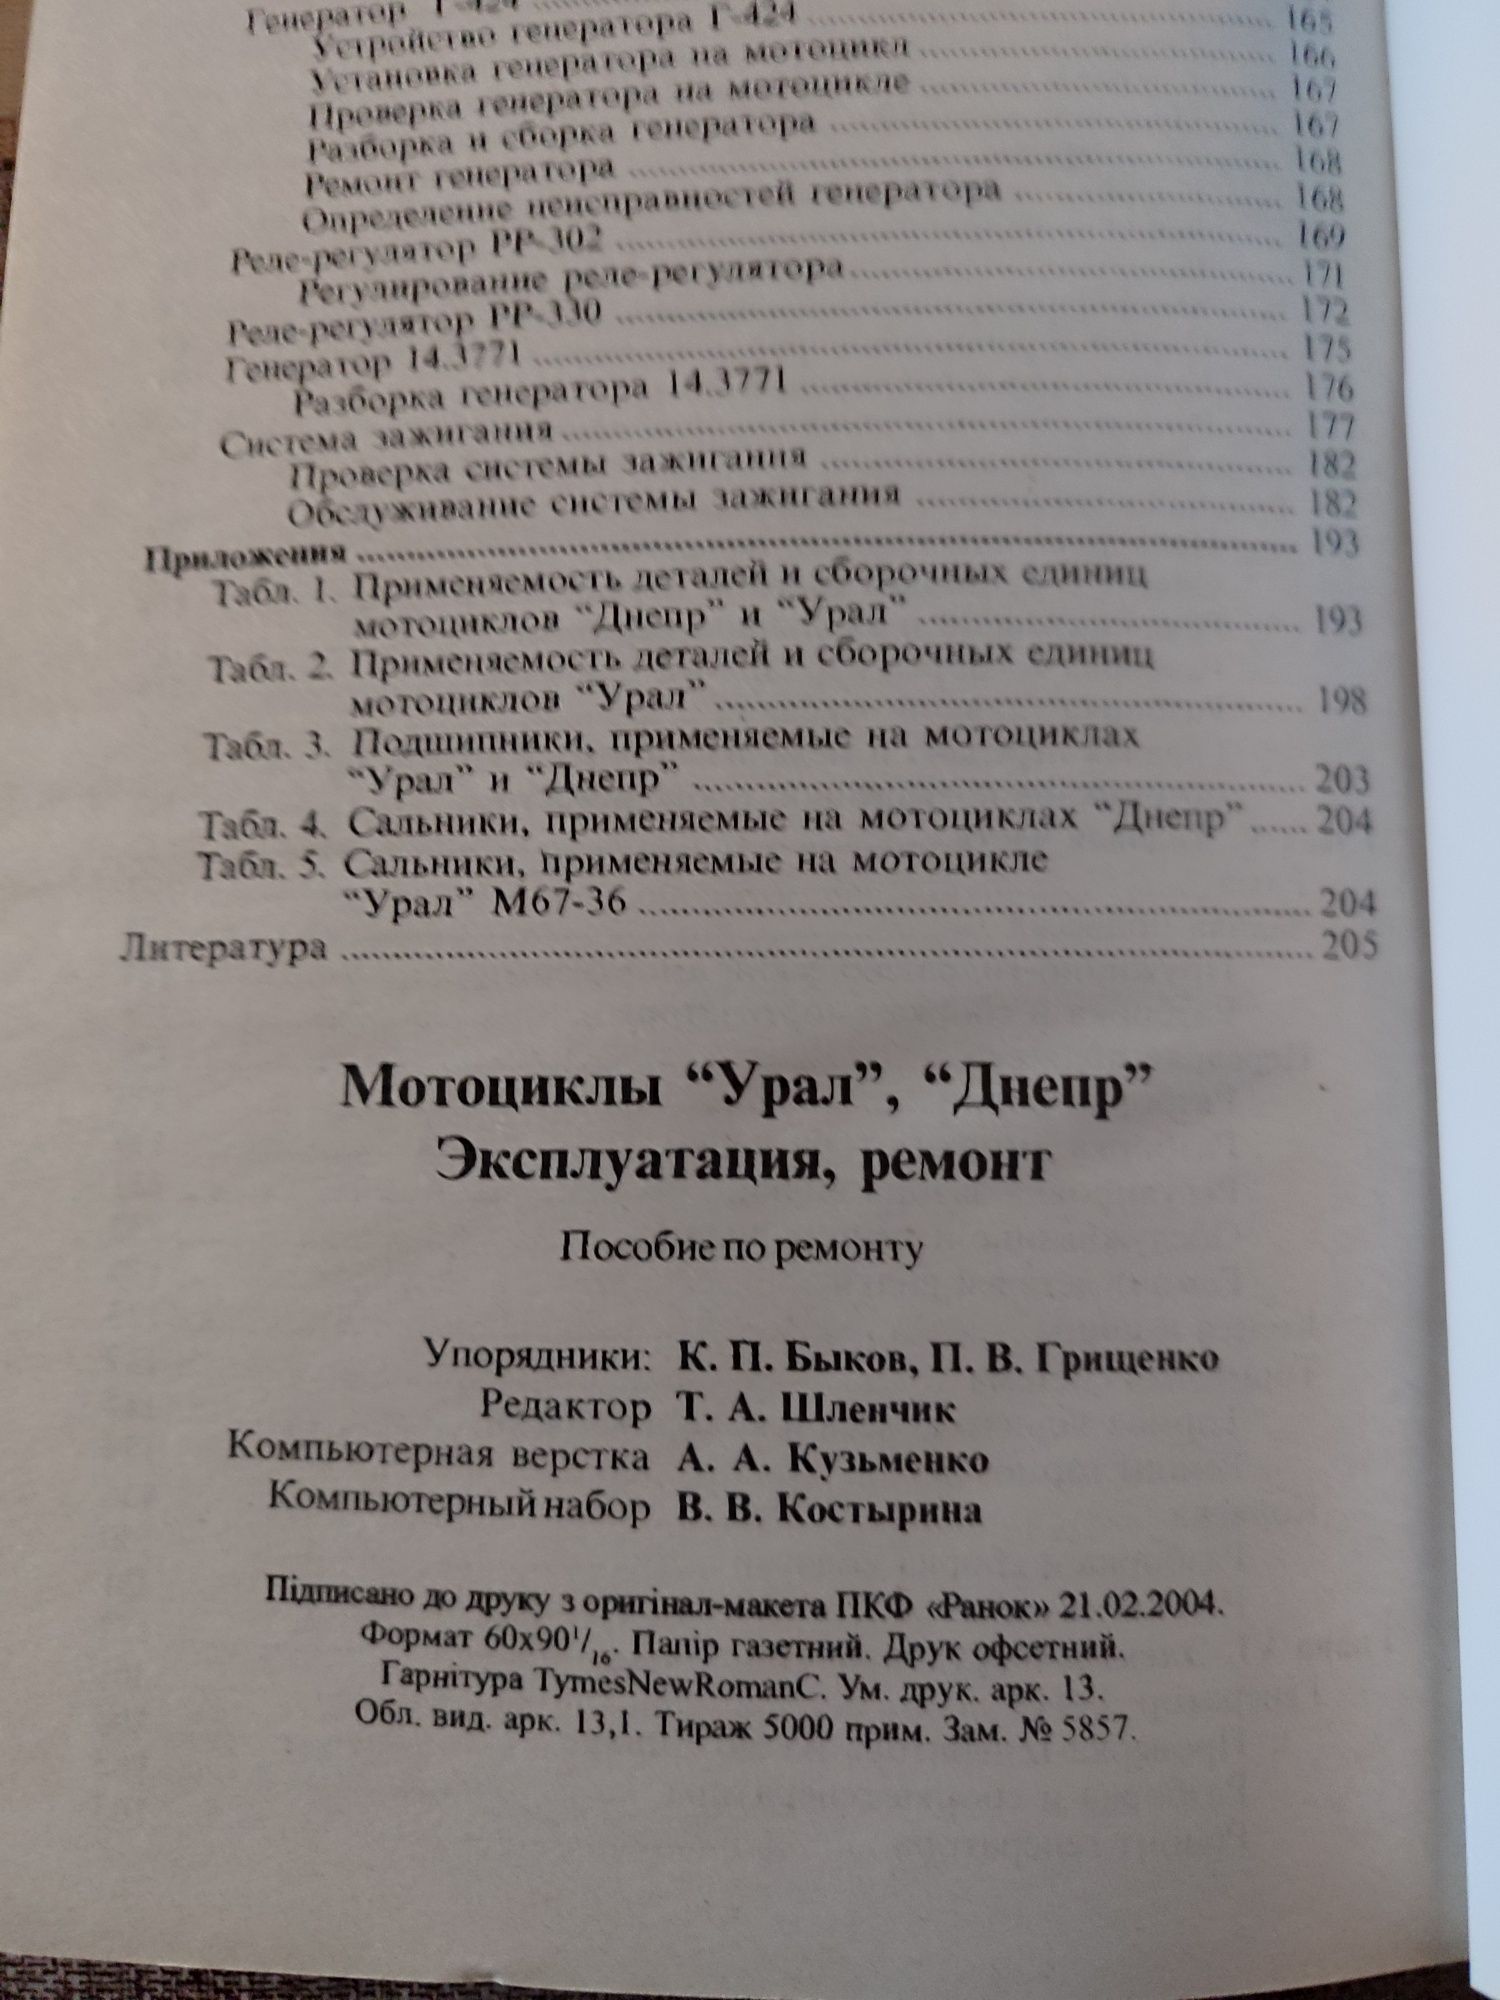 Книга експлуатація Дніпро Урал